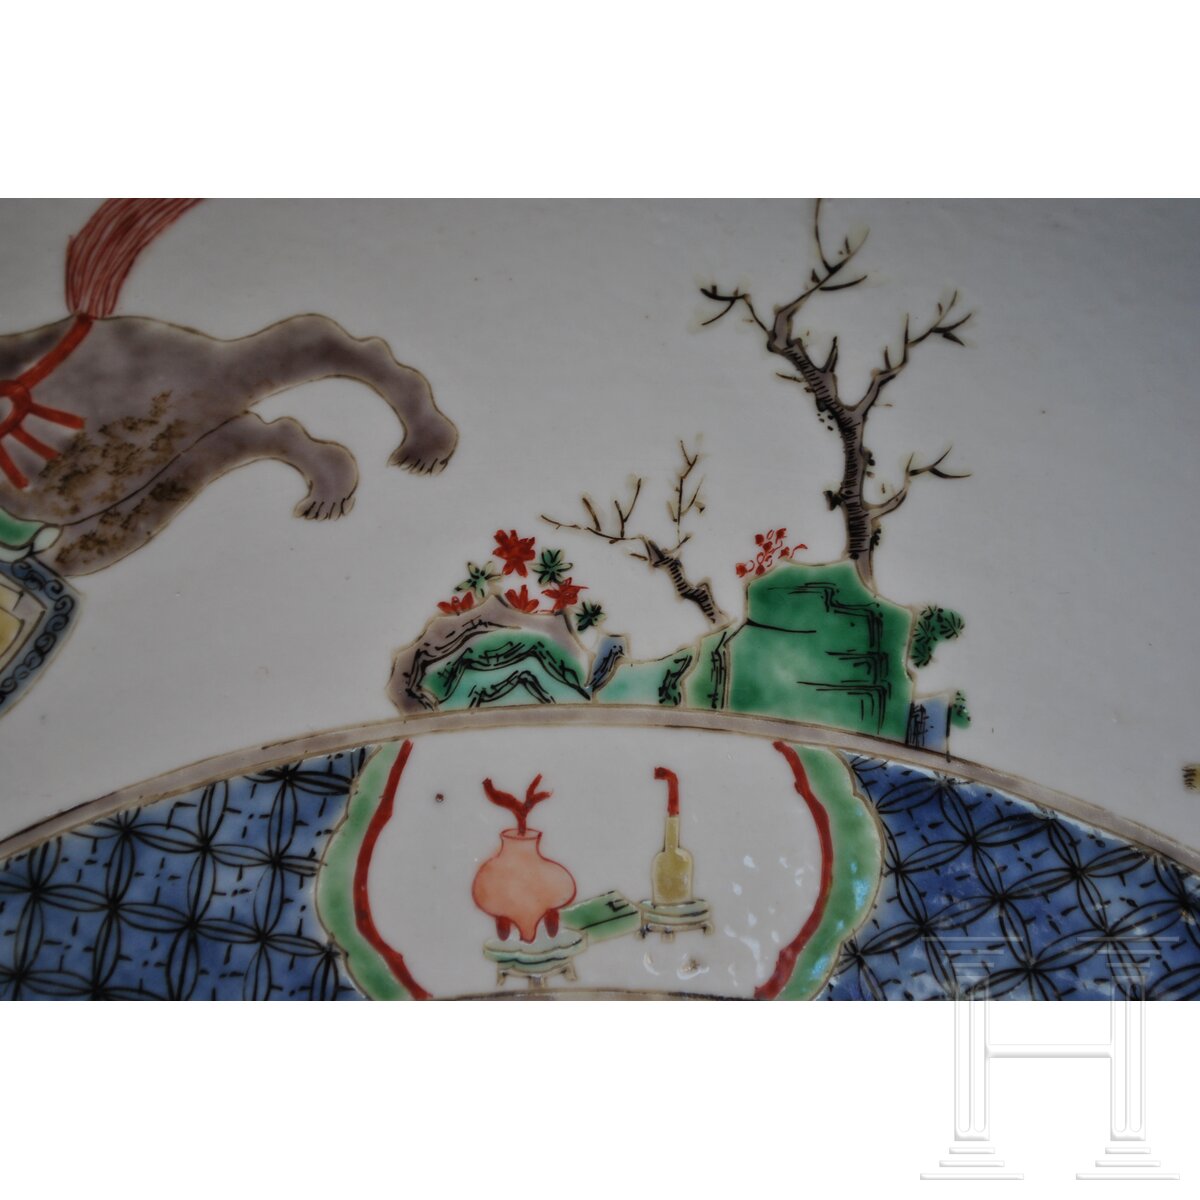 Zwei große Famille-verte-Teller mit figürlichem Dekor, China, wohl Kangxi-Periode (18. Jhdt.) - Image 15 of 41